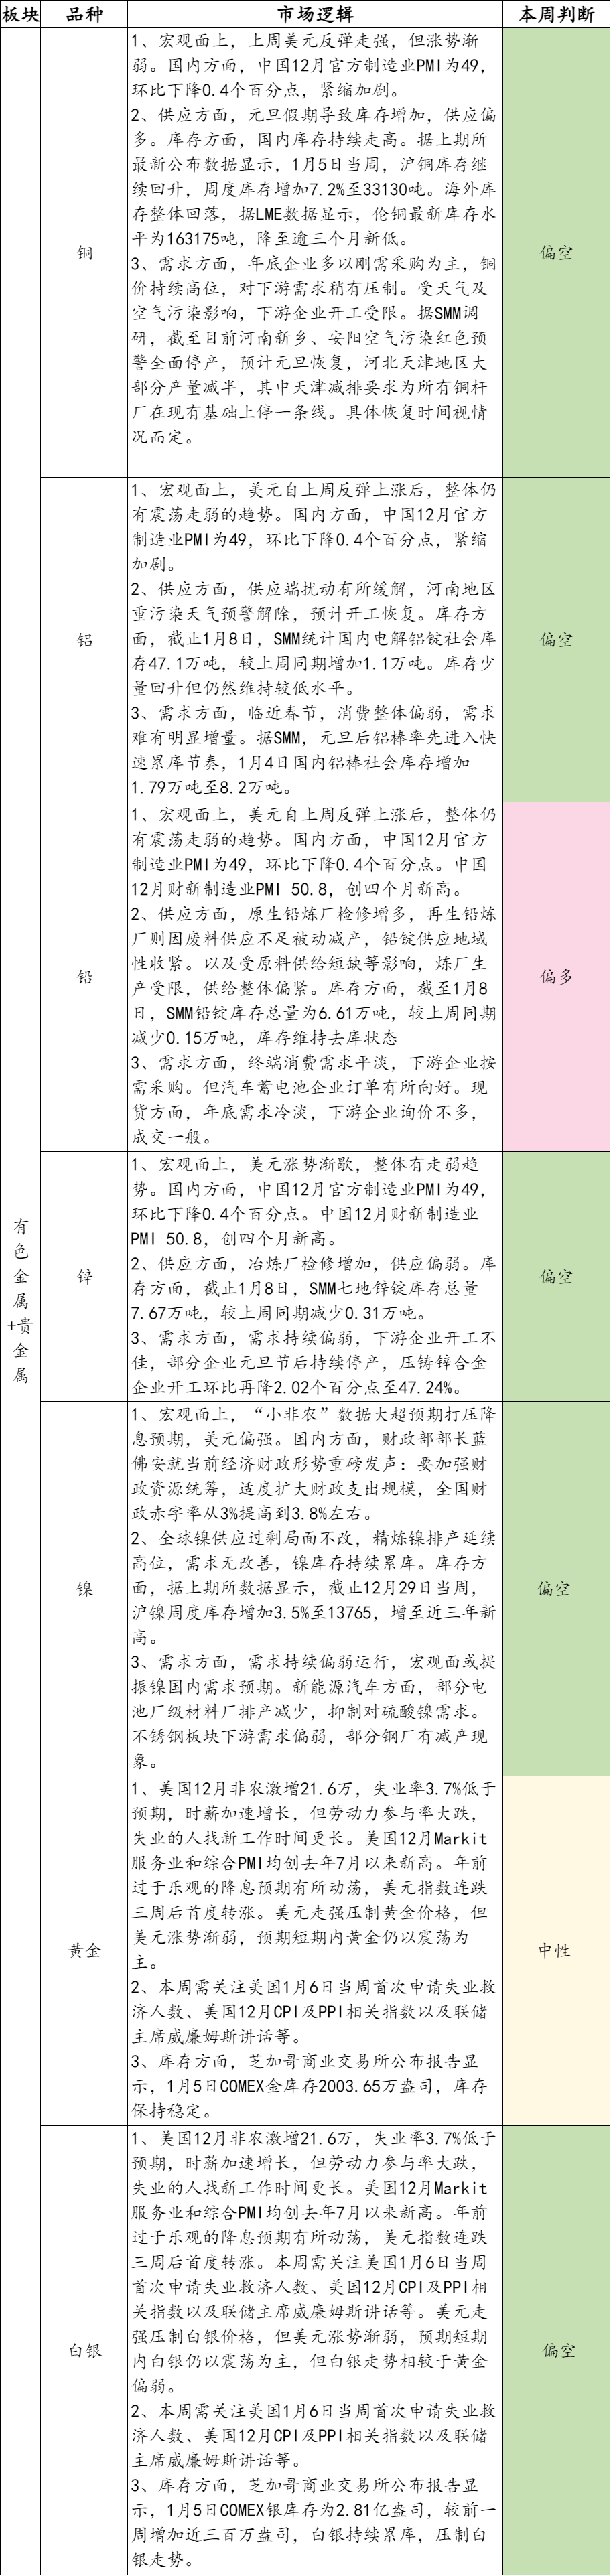 【有色贵金属】行情提示及操作建议2024/1/10